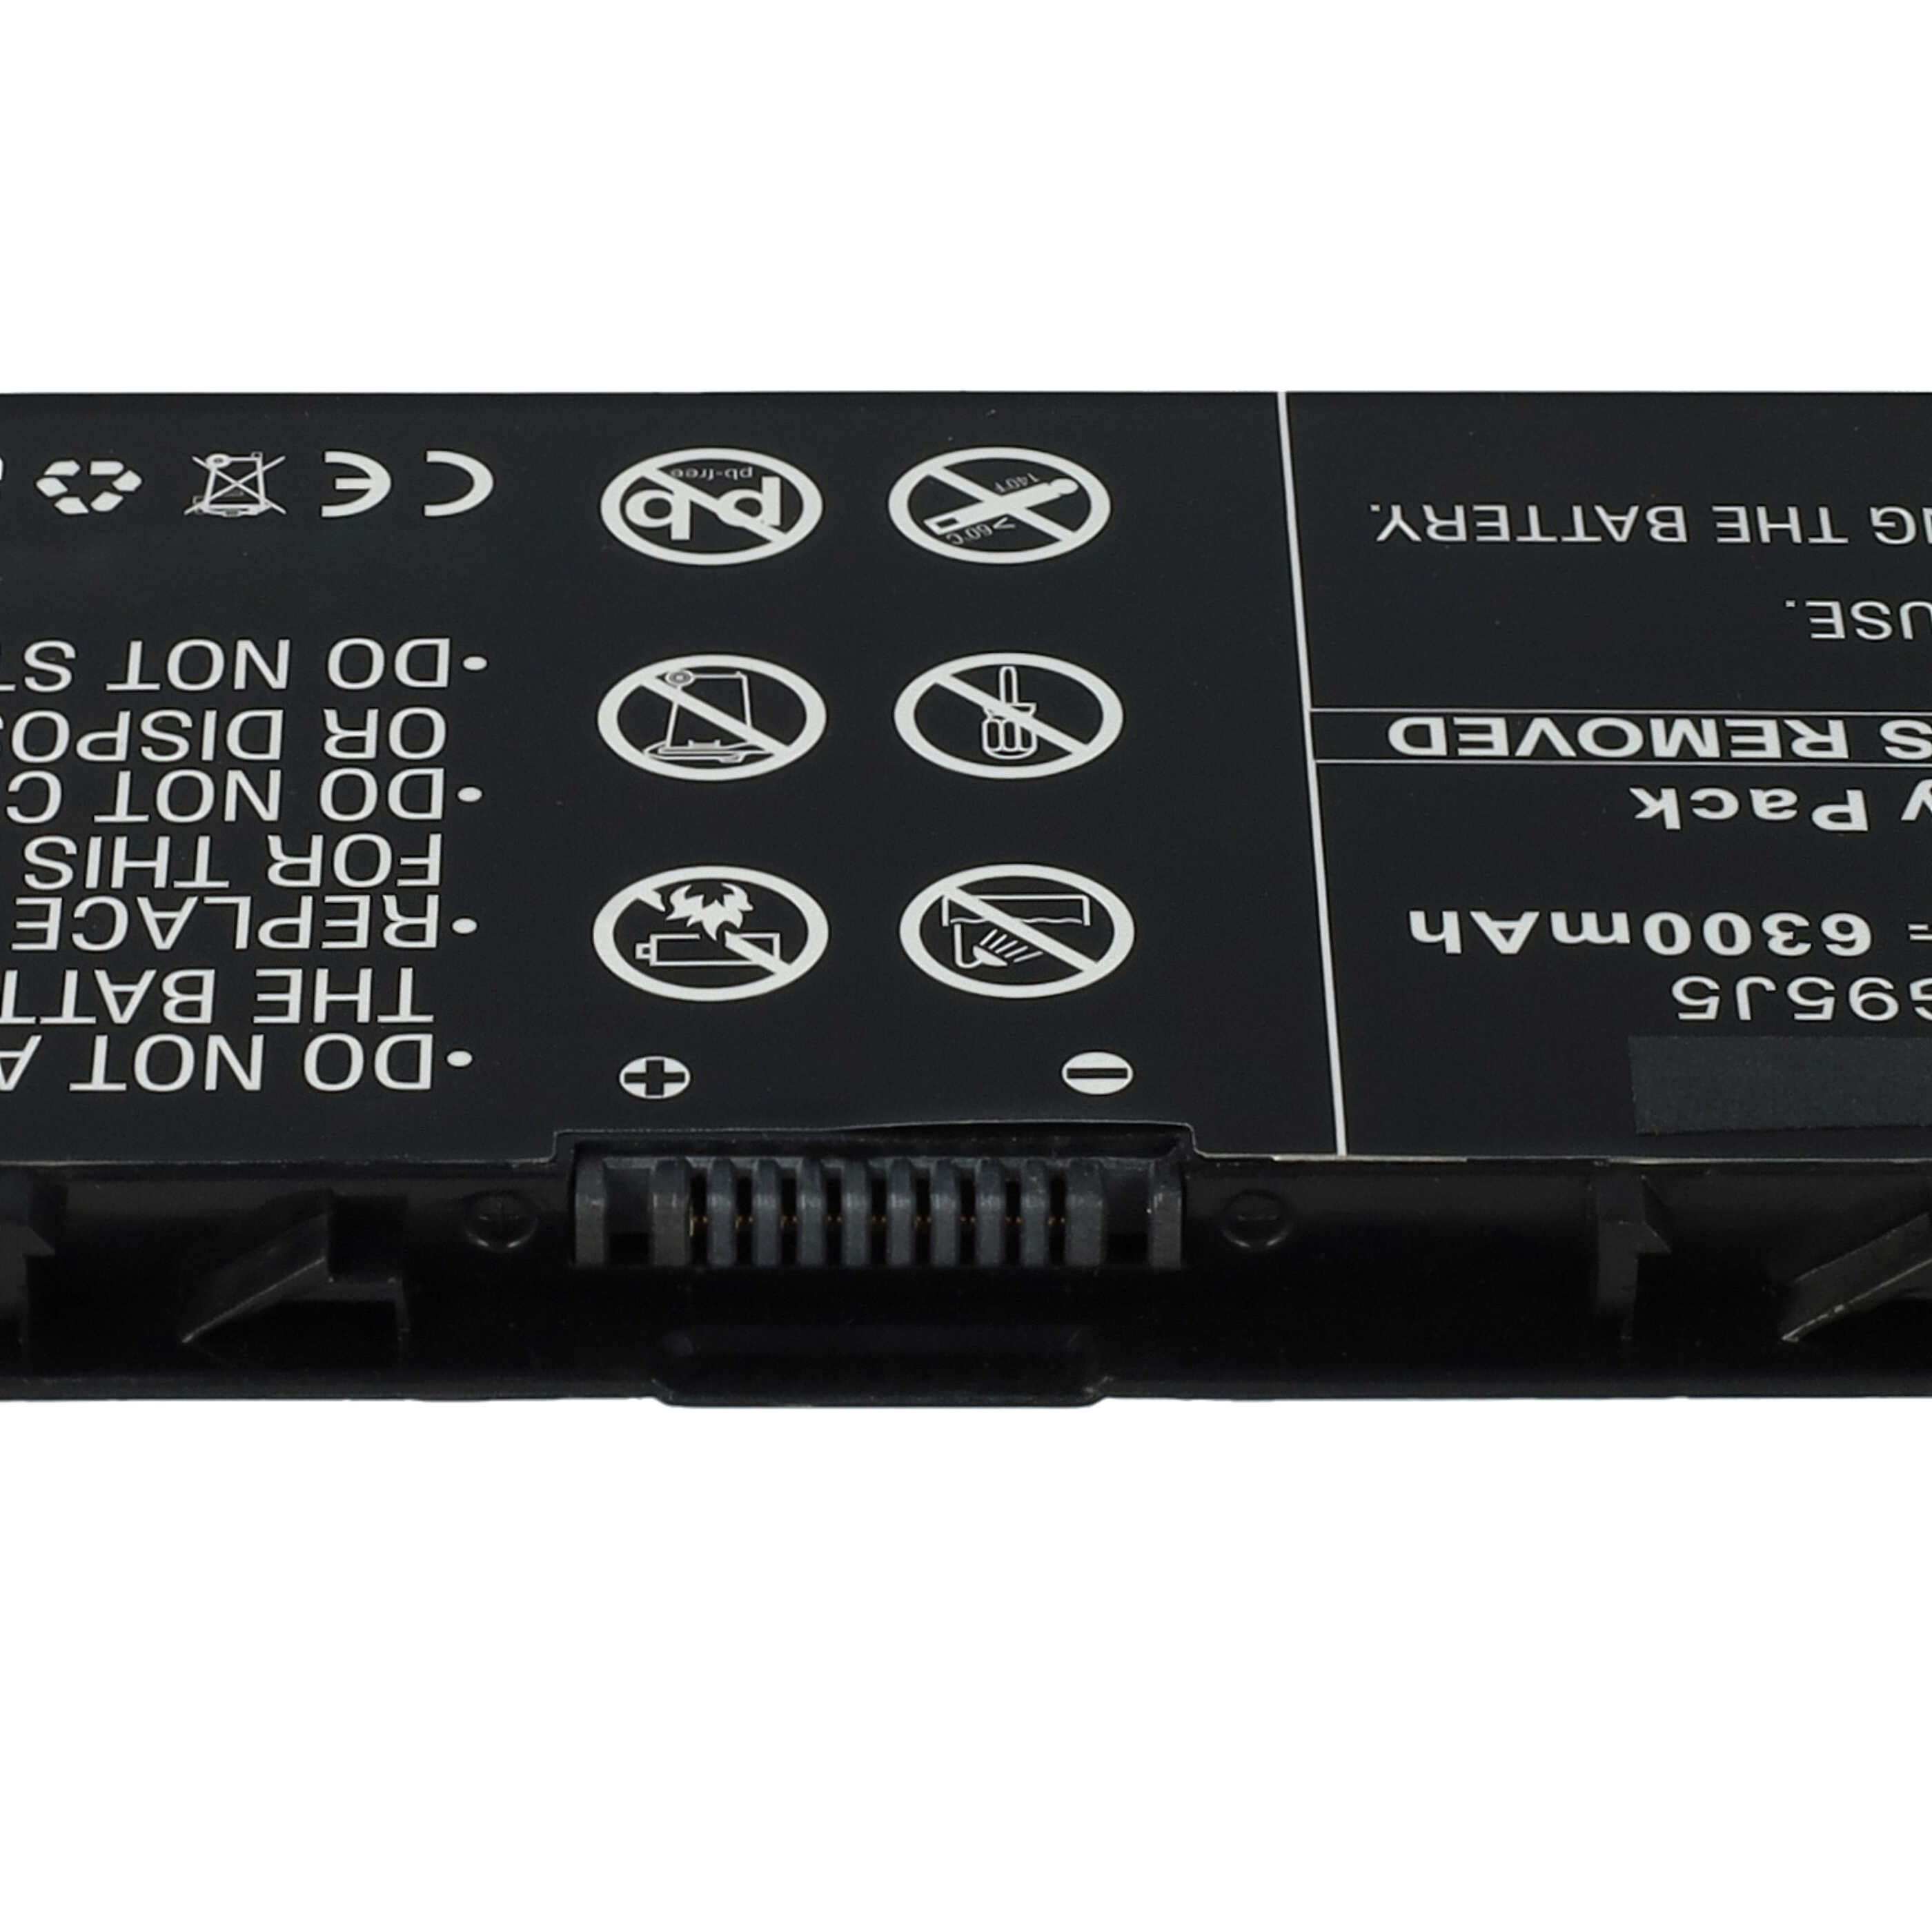 Batterie remplace Dell 3RNFD, FLP22C01, G95J5, V8XN3 pour ordinateur portable - 6300mAh 7,4V Li-ion